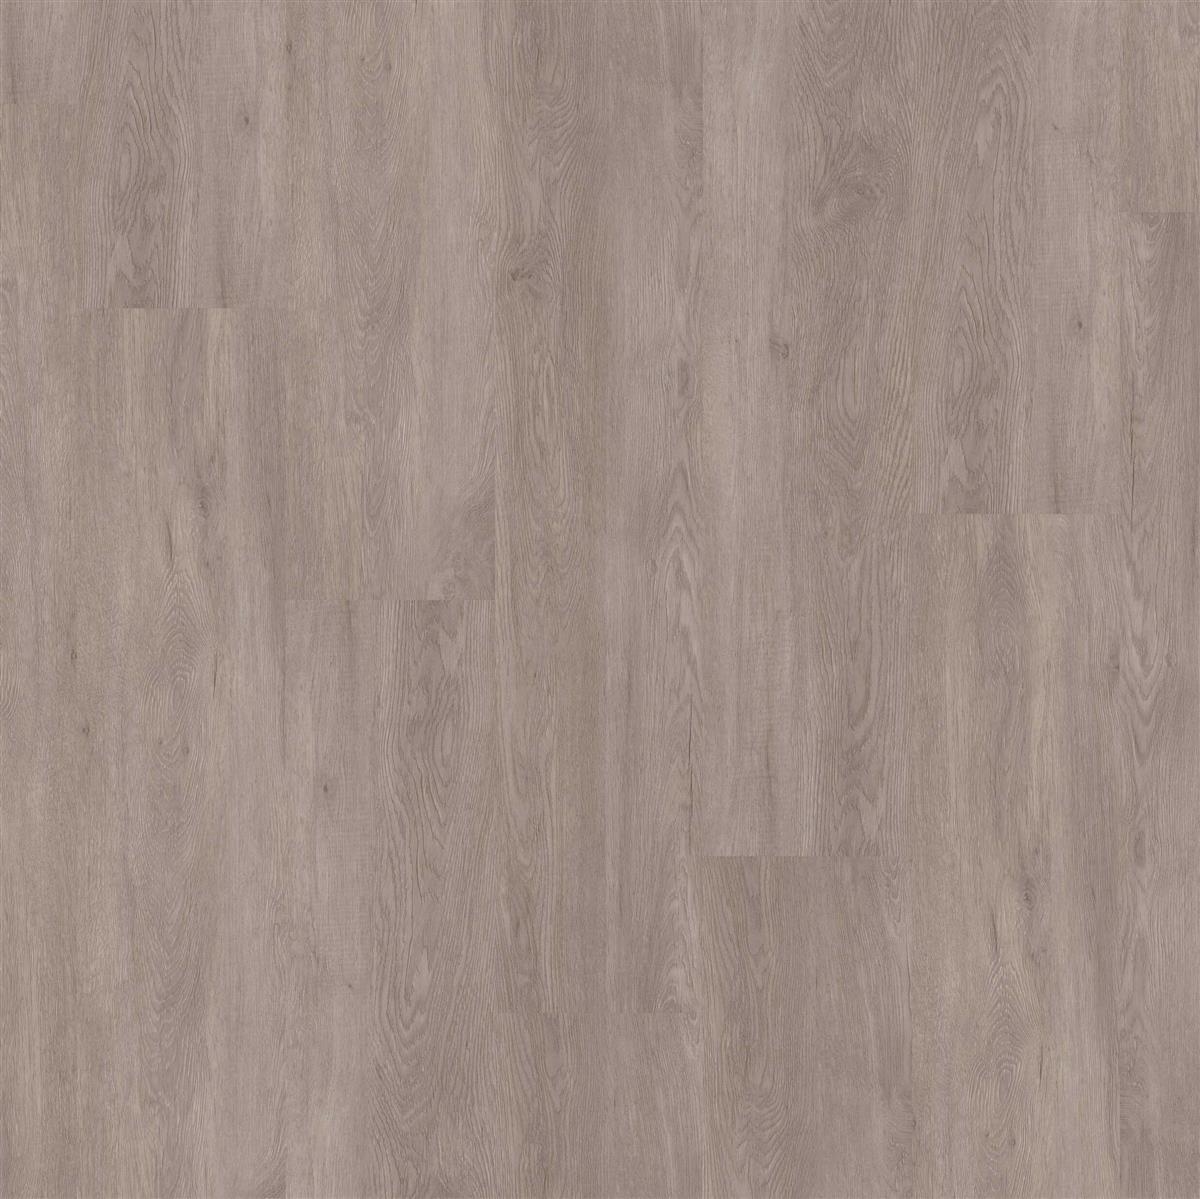 Klebevinyl JOKA Designböden 555 | 5425 African Grey Oak